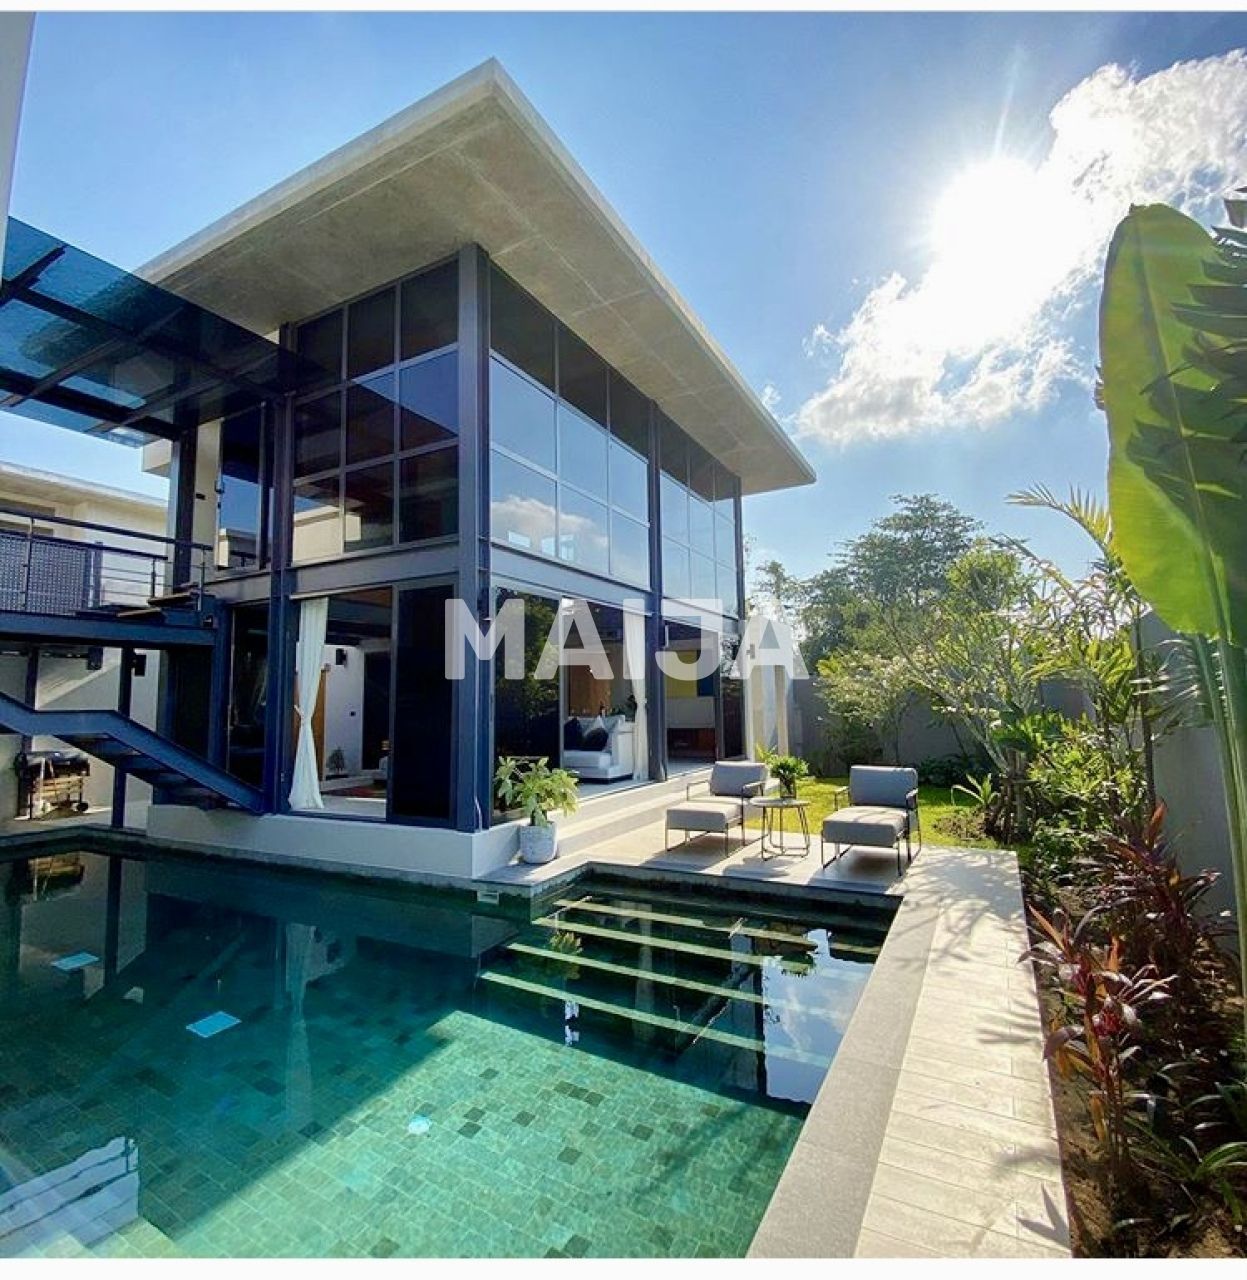 Villa in Insel Phuket, Thailand, 324 m2 - Foto 1